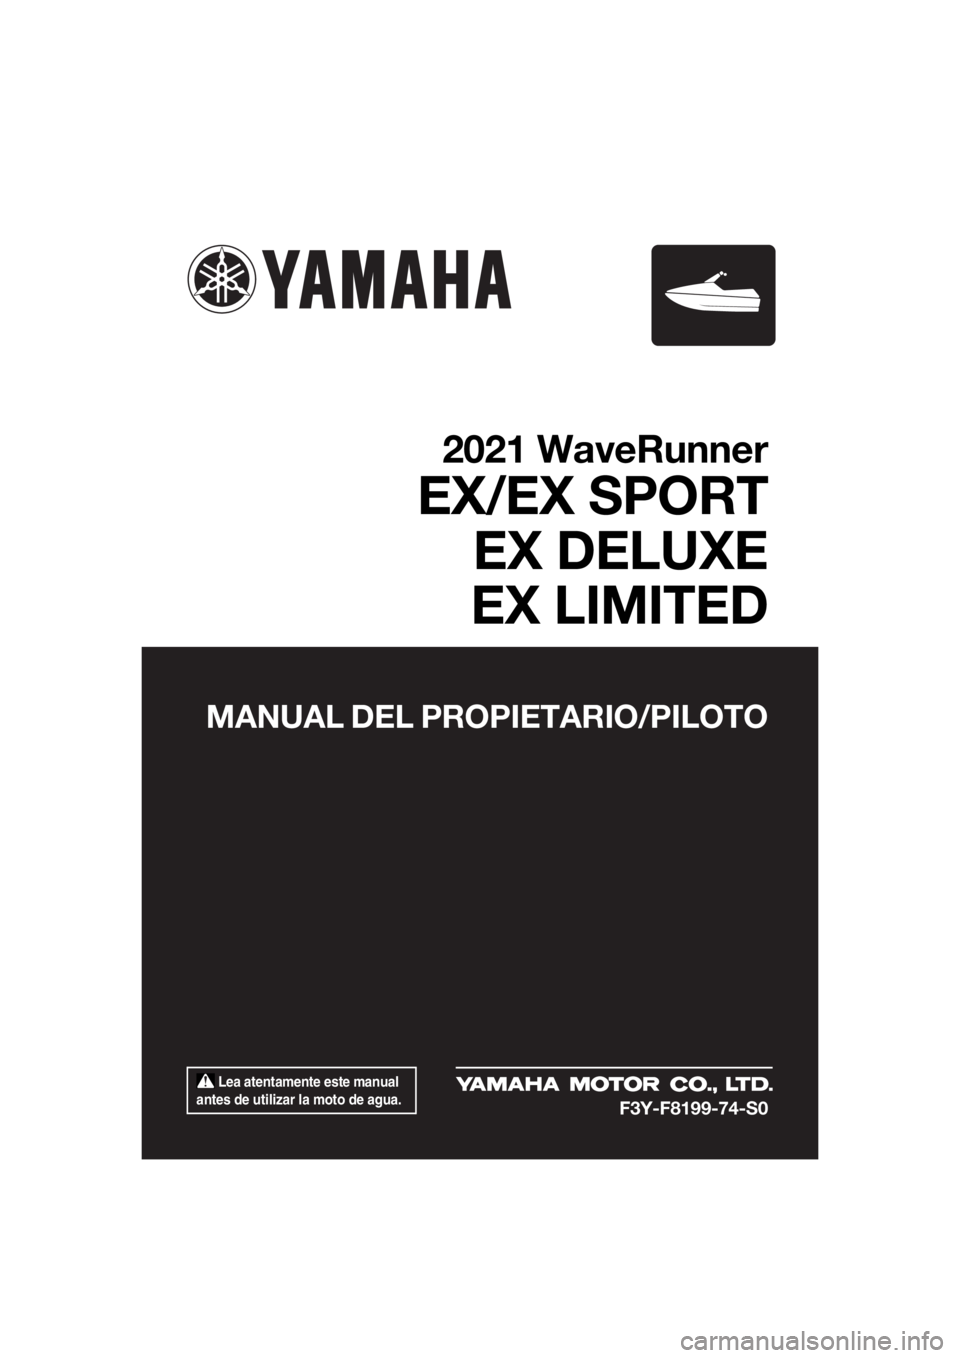 YAMAHA EX SPORT 2021  Manuale de Empleo (in Spanish)  Lea atentamente este manual 
antes de utilizar la moto de agua.
MANUAL DEL PROPIETARIO/PILOTO
2021 WaveRunner
EX/EX SPORT EX DELUXE
EX LIMITED
F3Y-F8199-74-S0
UF3Y74S0.book  Page 1  Tuesday, June 23,